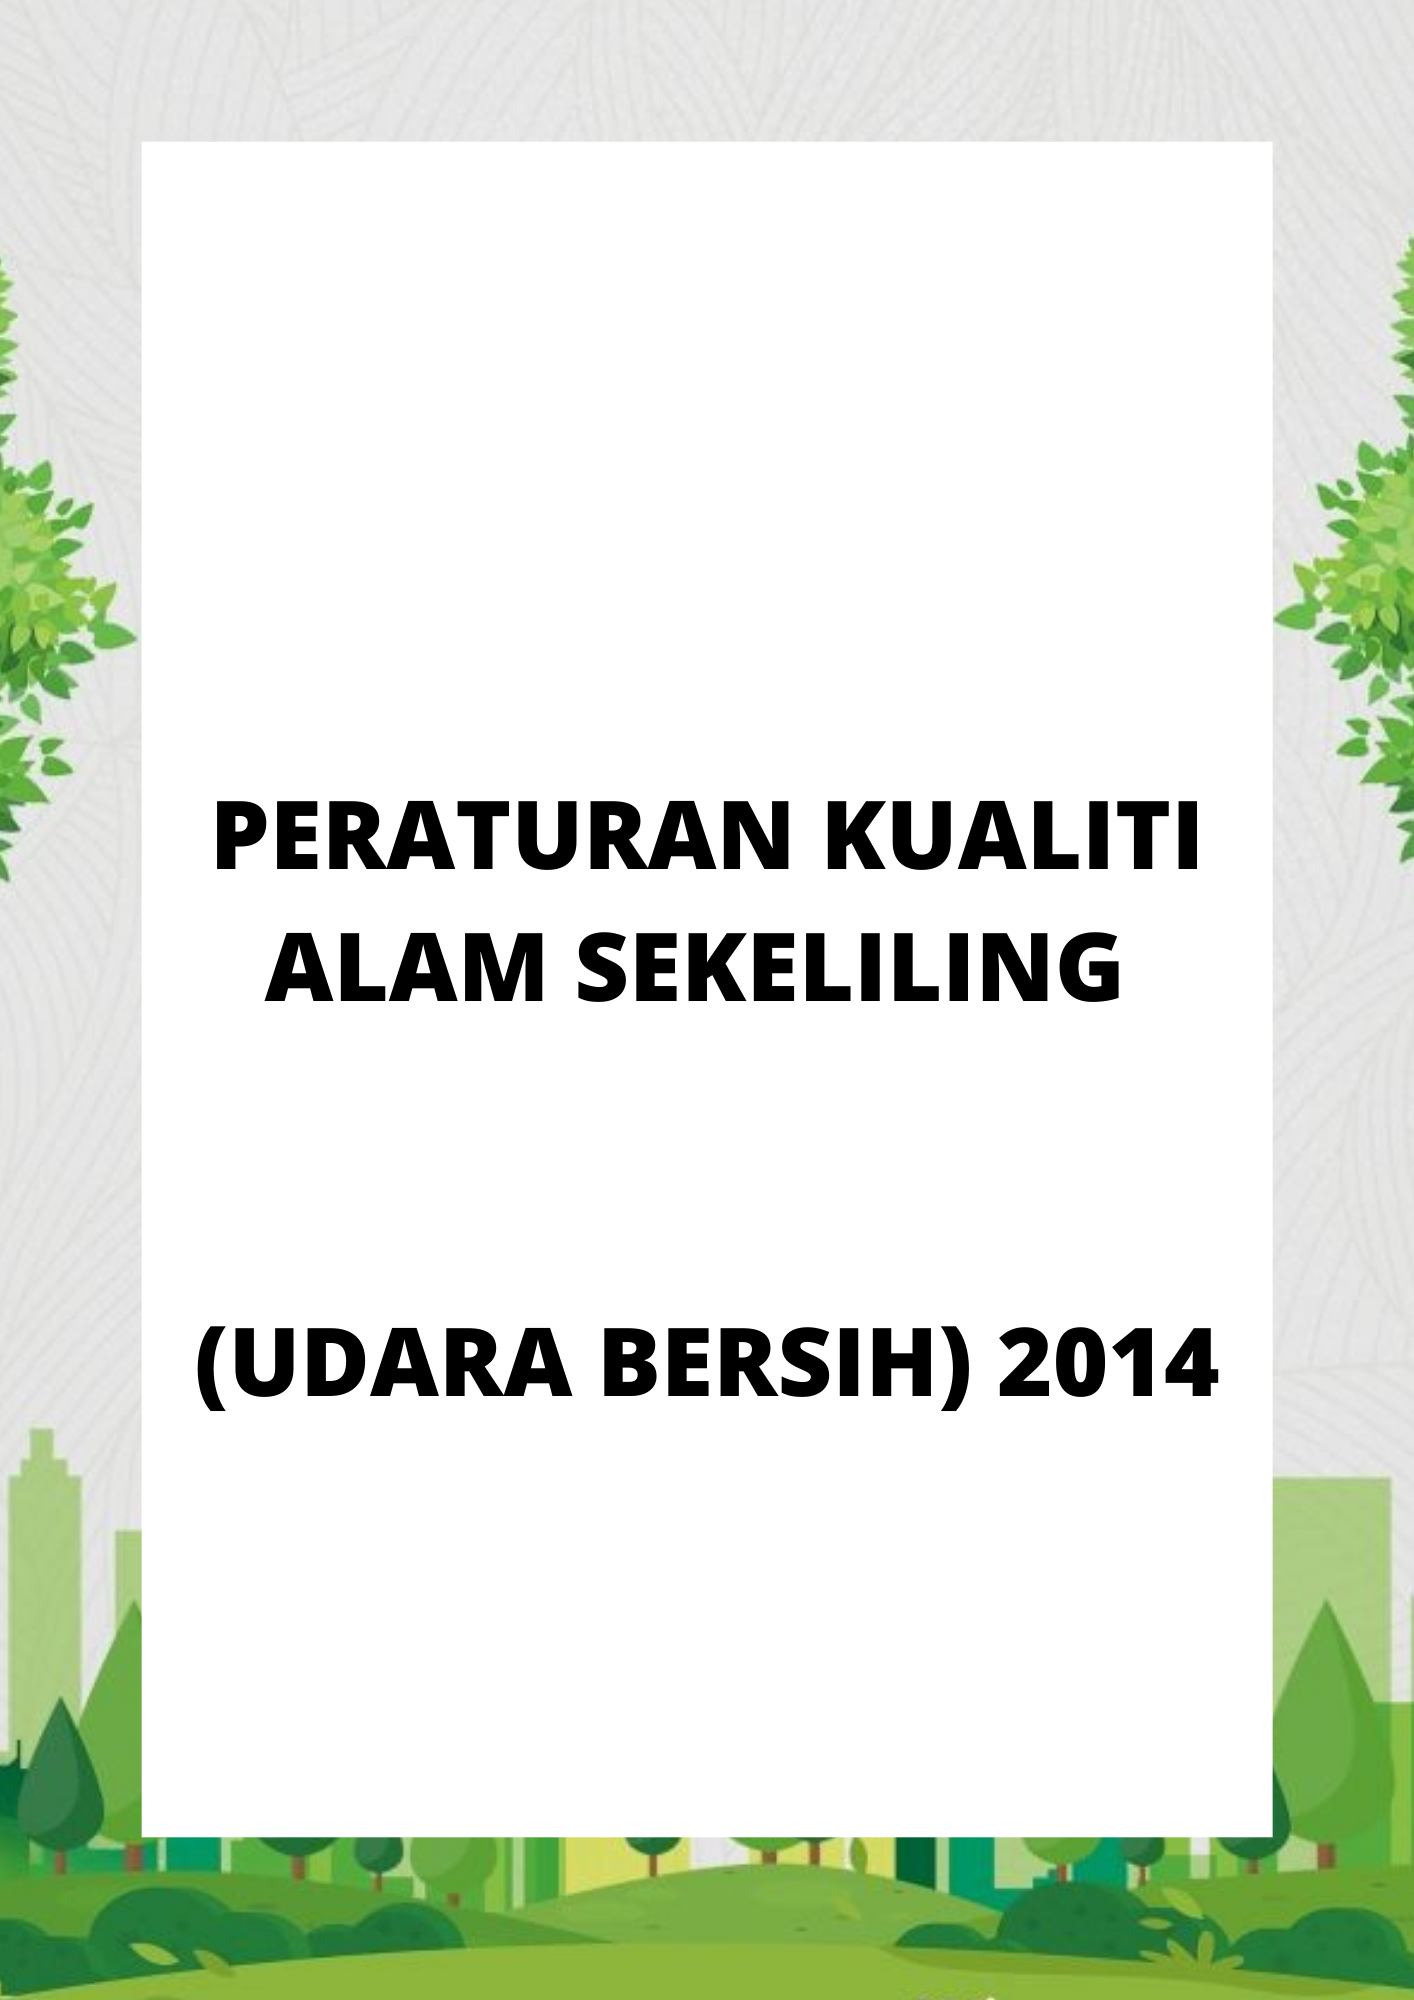 Peraturan Kualiti Alam Sekeliling (Udara Bersih) 2014